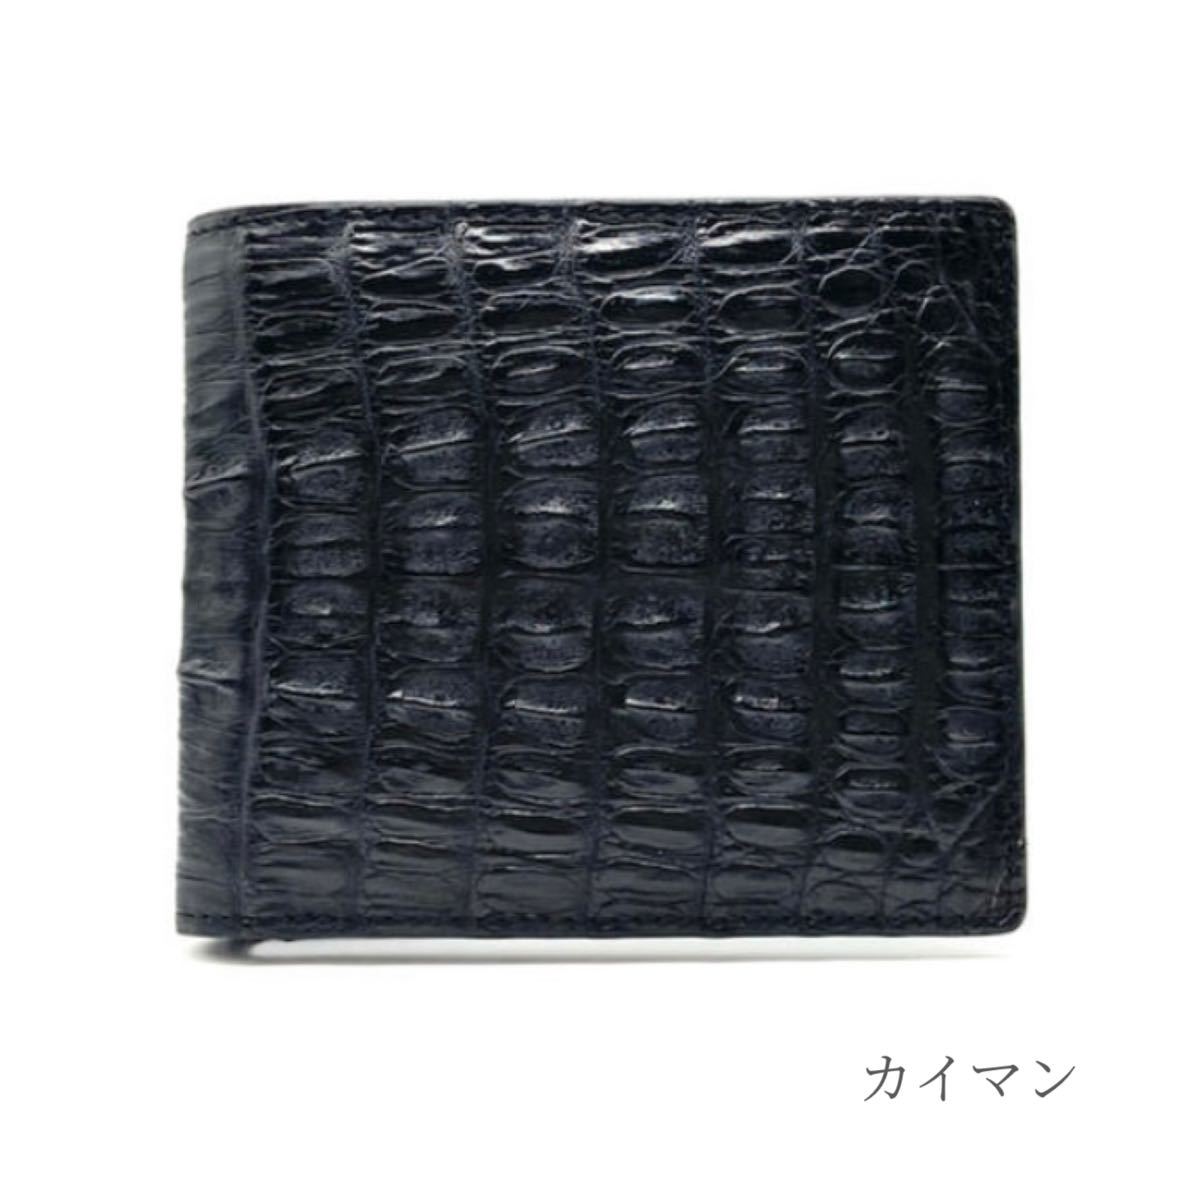 二つ折り財布 カイマン マット加工 黒 ブラック ワニ革 財布 かぶせ ファッション小物 大容量 高品質 メンズ レディース ギフト